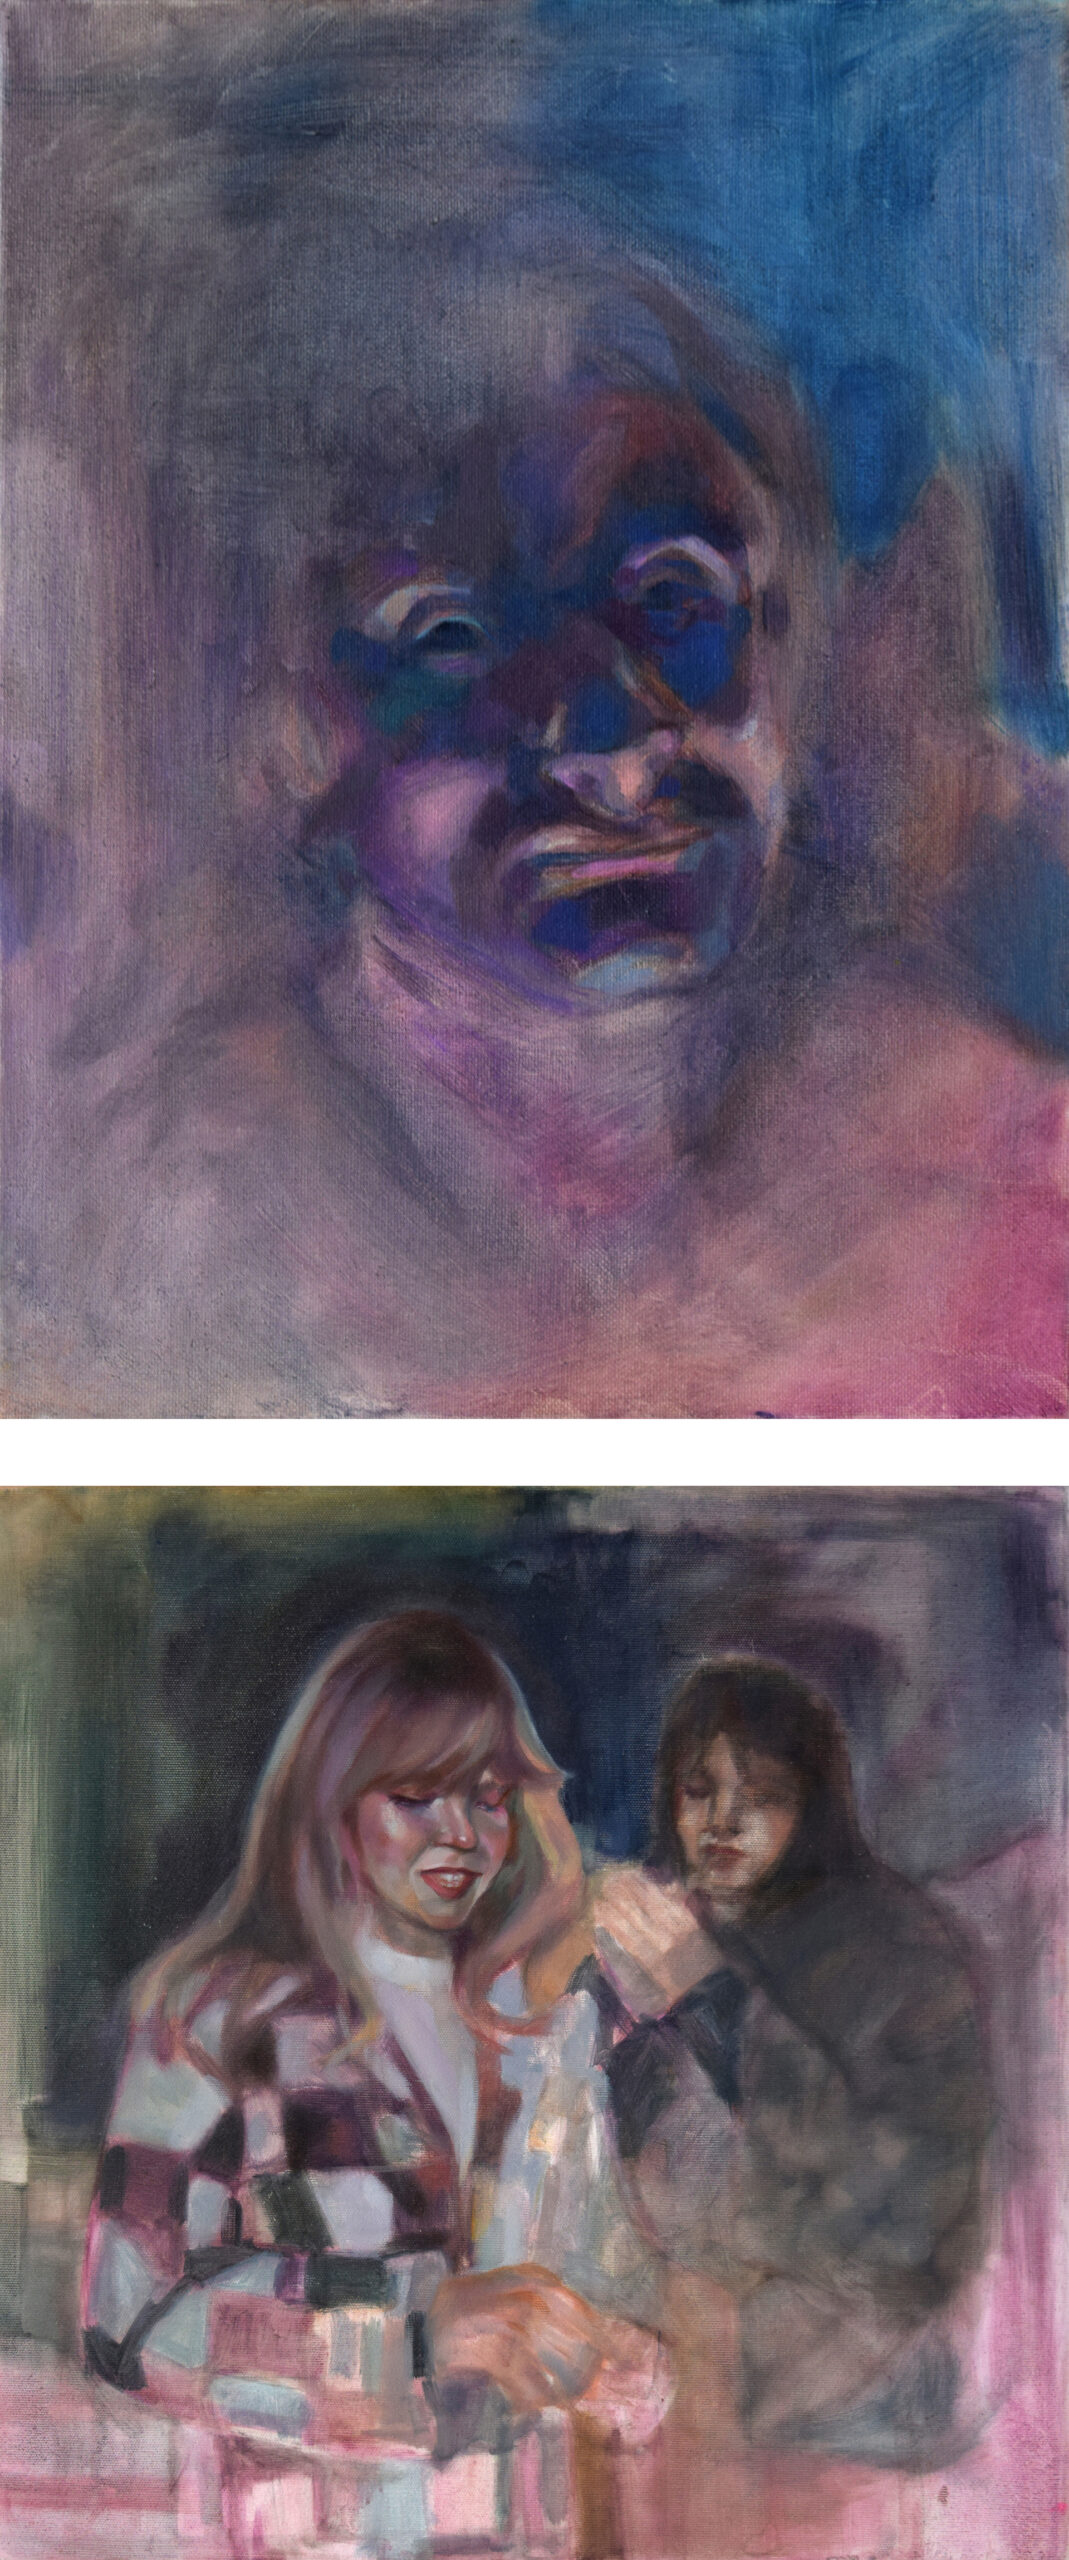 Dwie postaci, znajdujące się na balkonie w nocy. Z przodu autorka obrazu, z tyłu odpalająca papierosa dziewczyna.